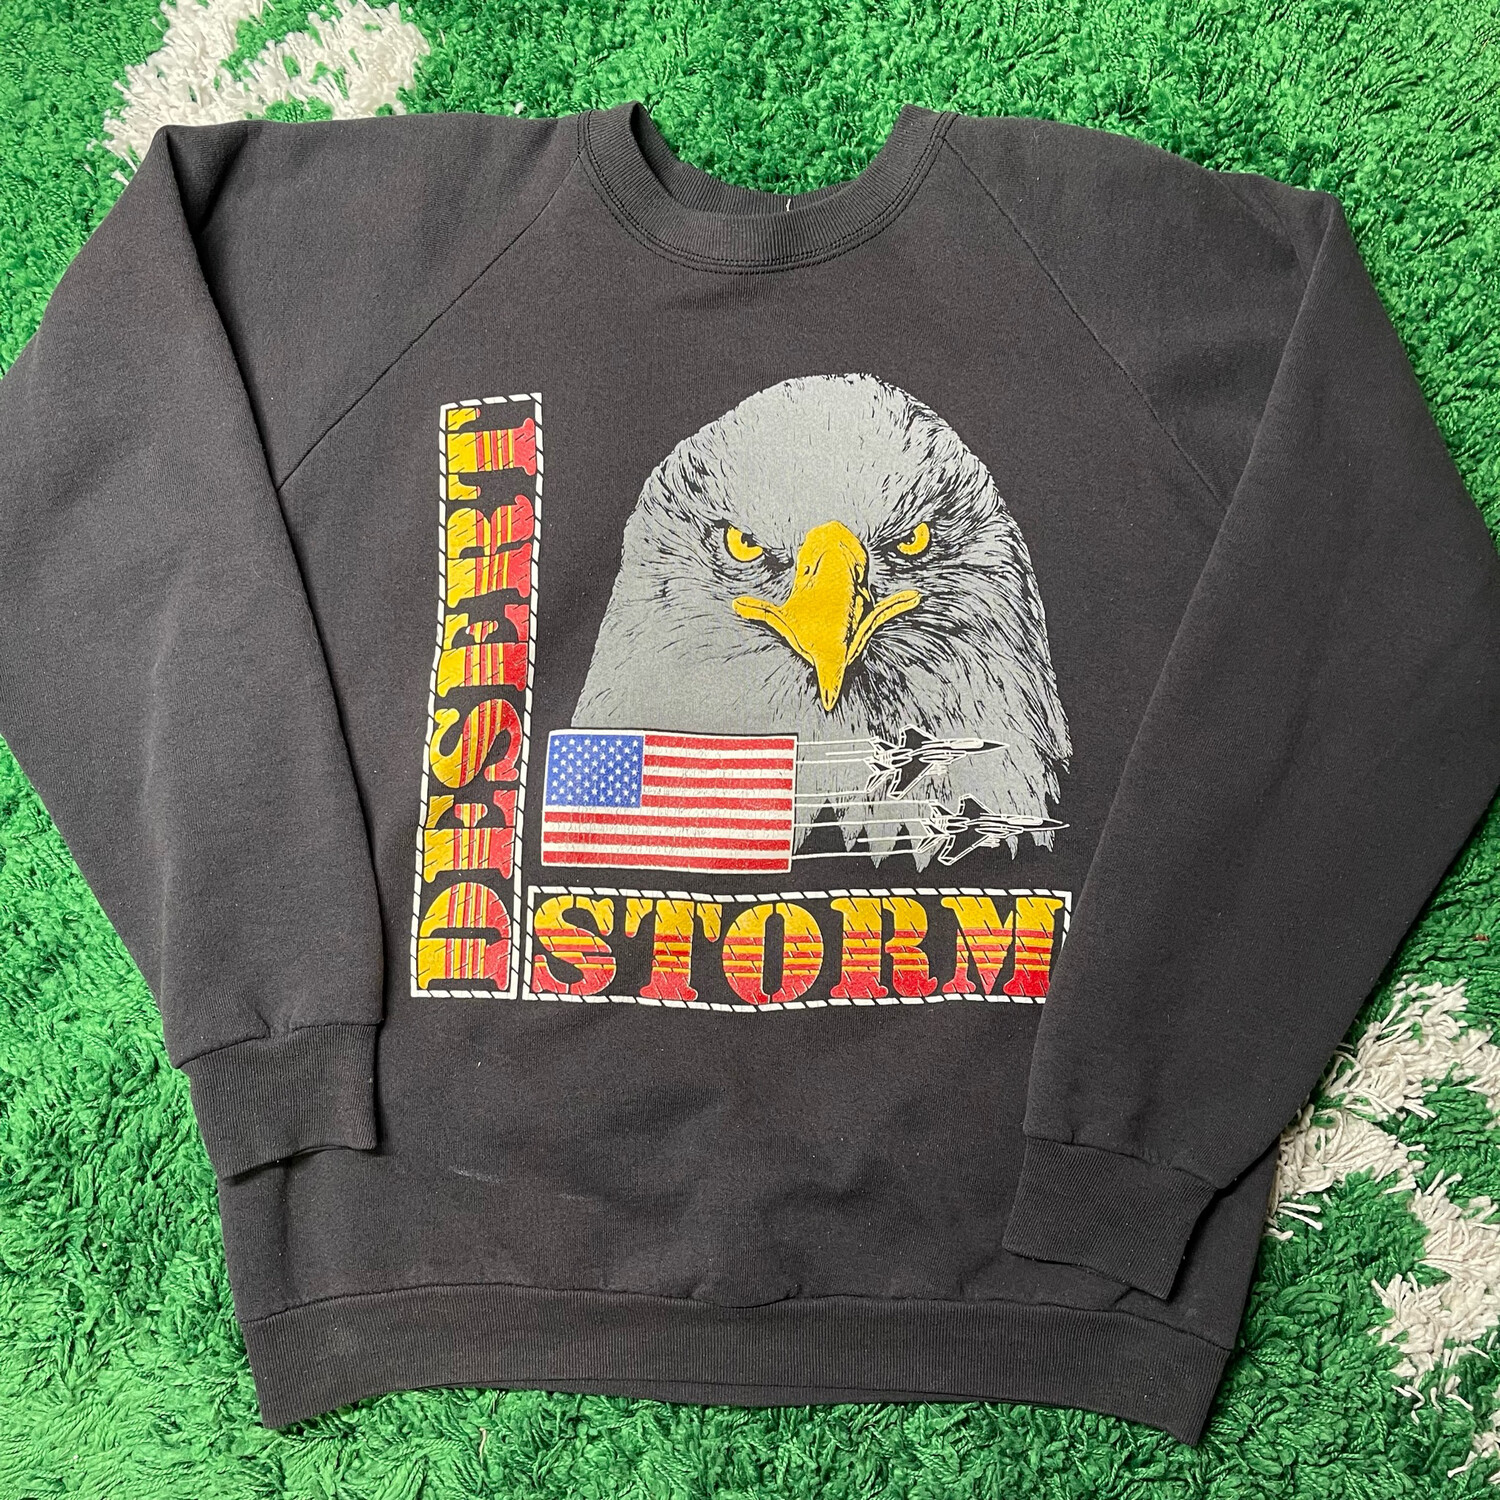 Desert Storm Black Crewneck Sweatshirt Size XL